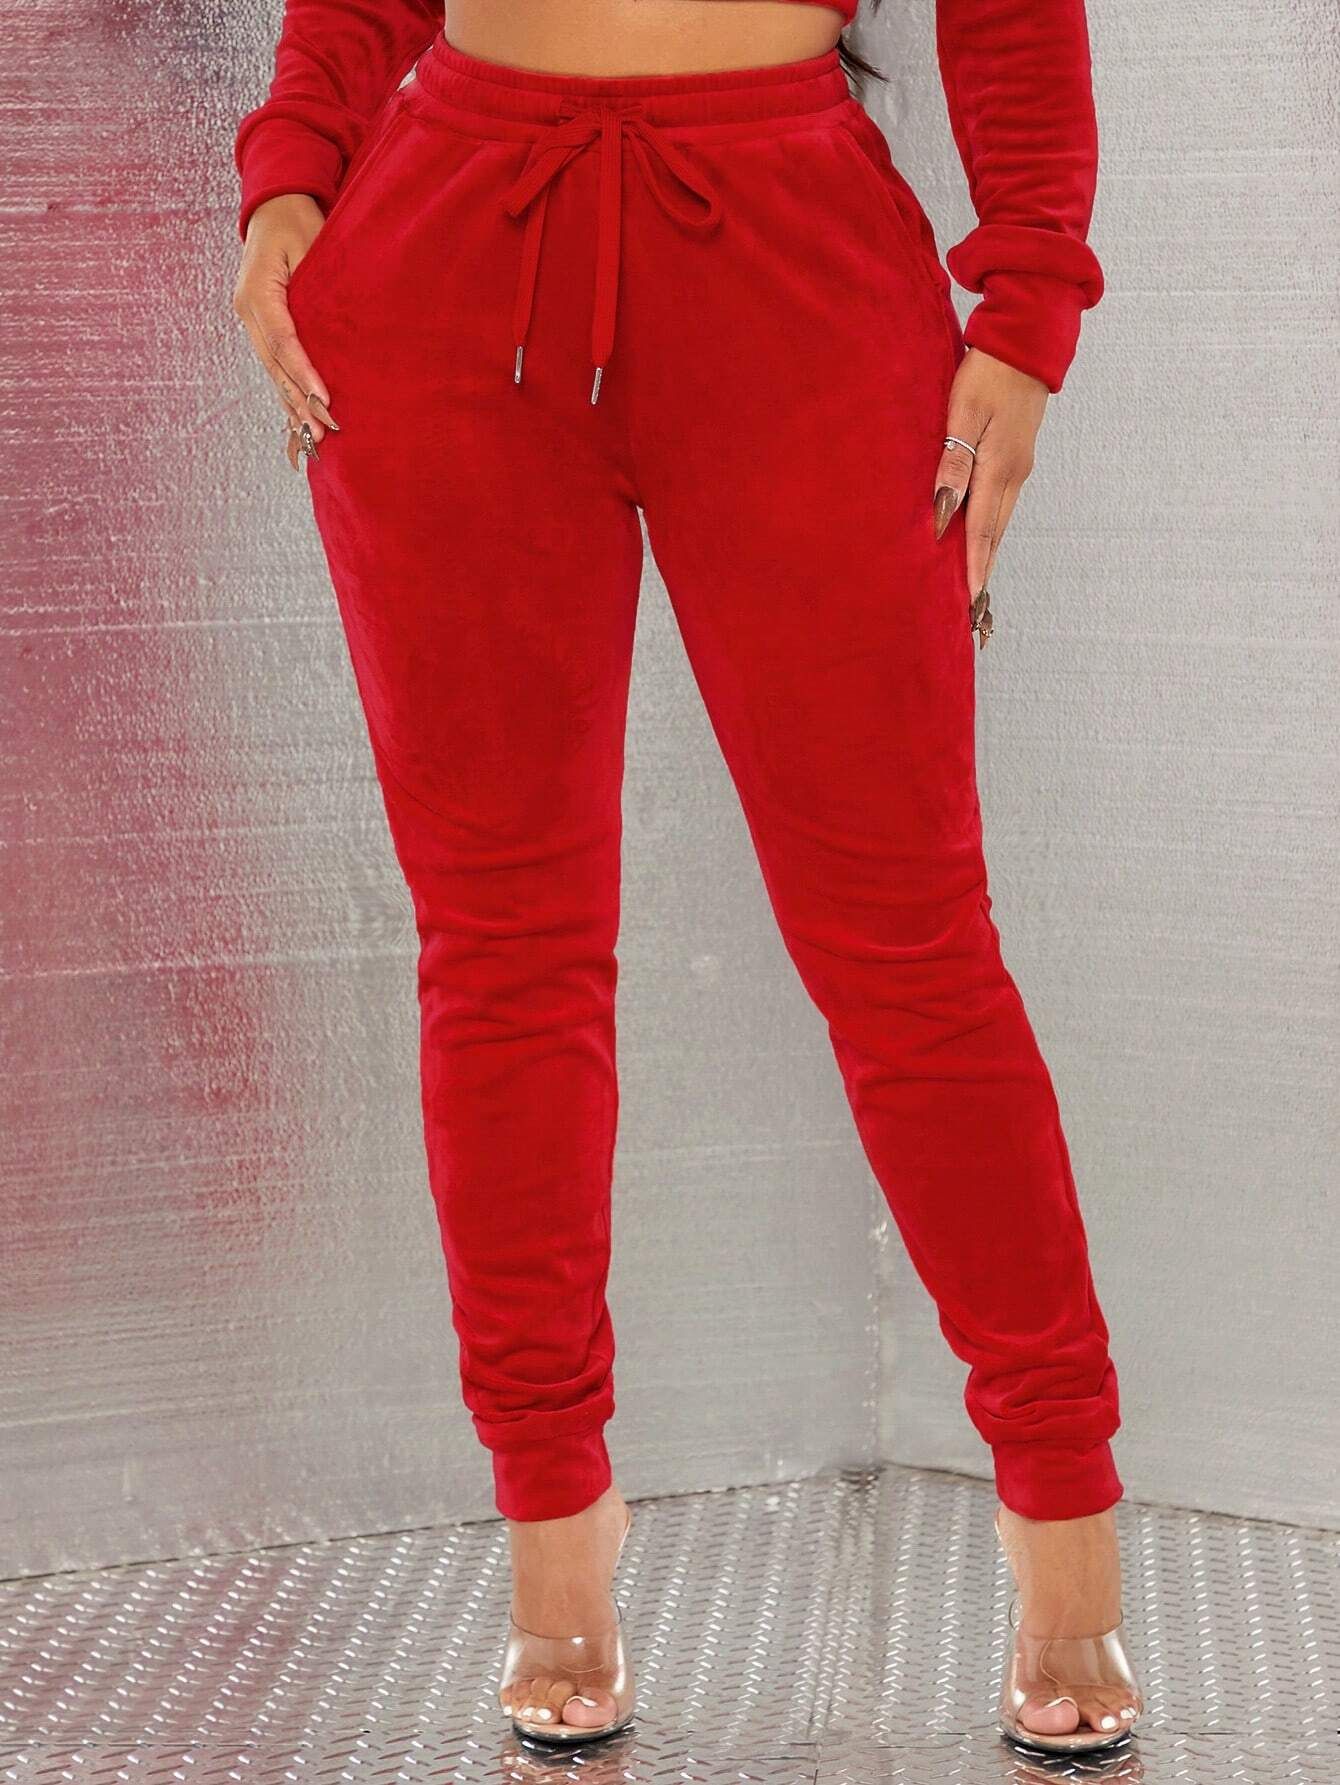 SHEIN SXY Christmas Plush Home & Casual & Sports Red Women's Sweatpants | SHEIN